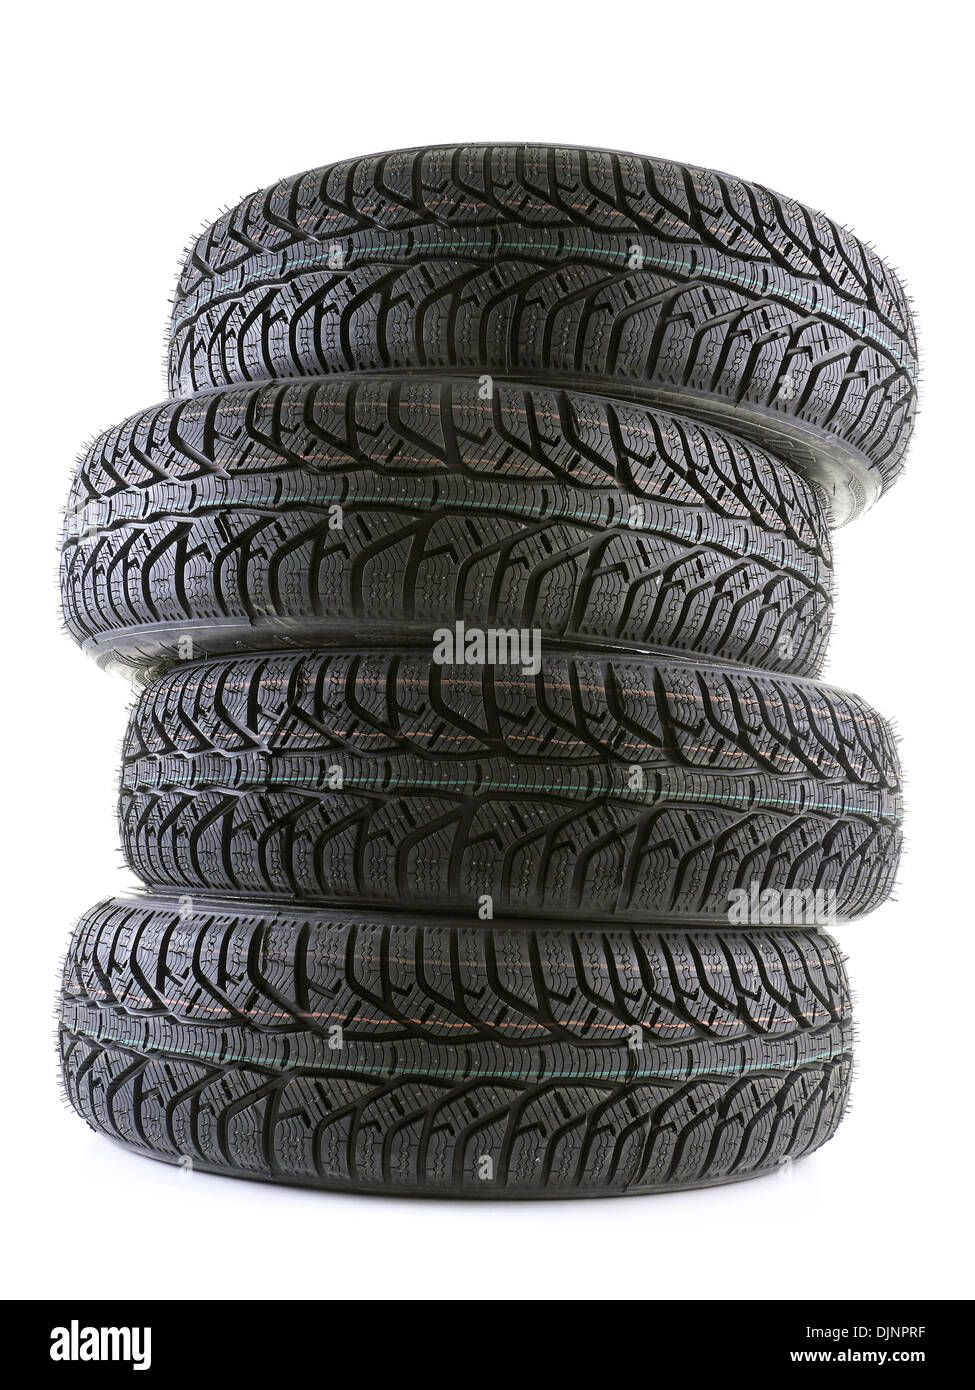 Pile de quatre pneus de voiture hiver shot on white Banque D'Images